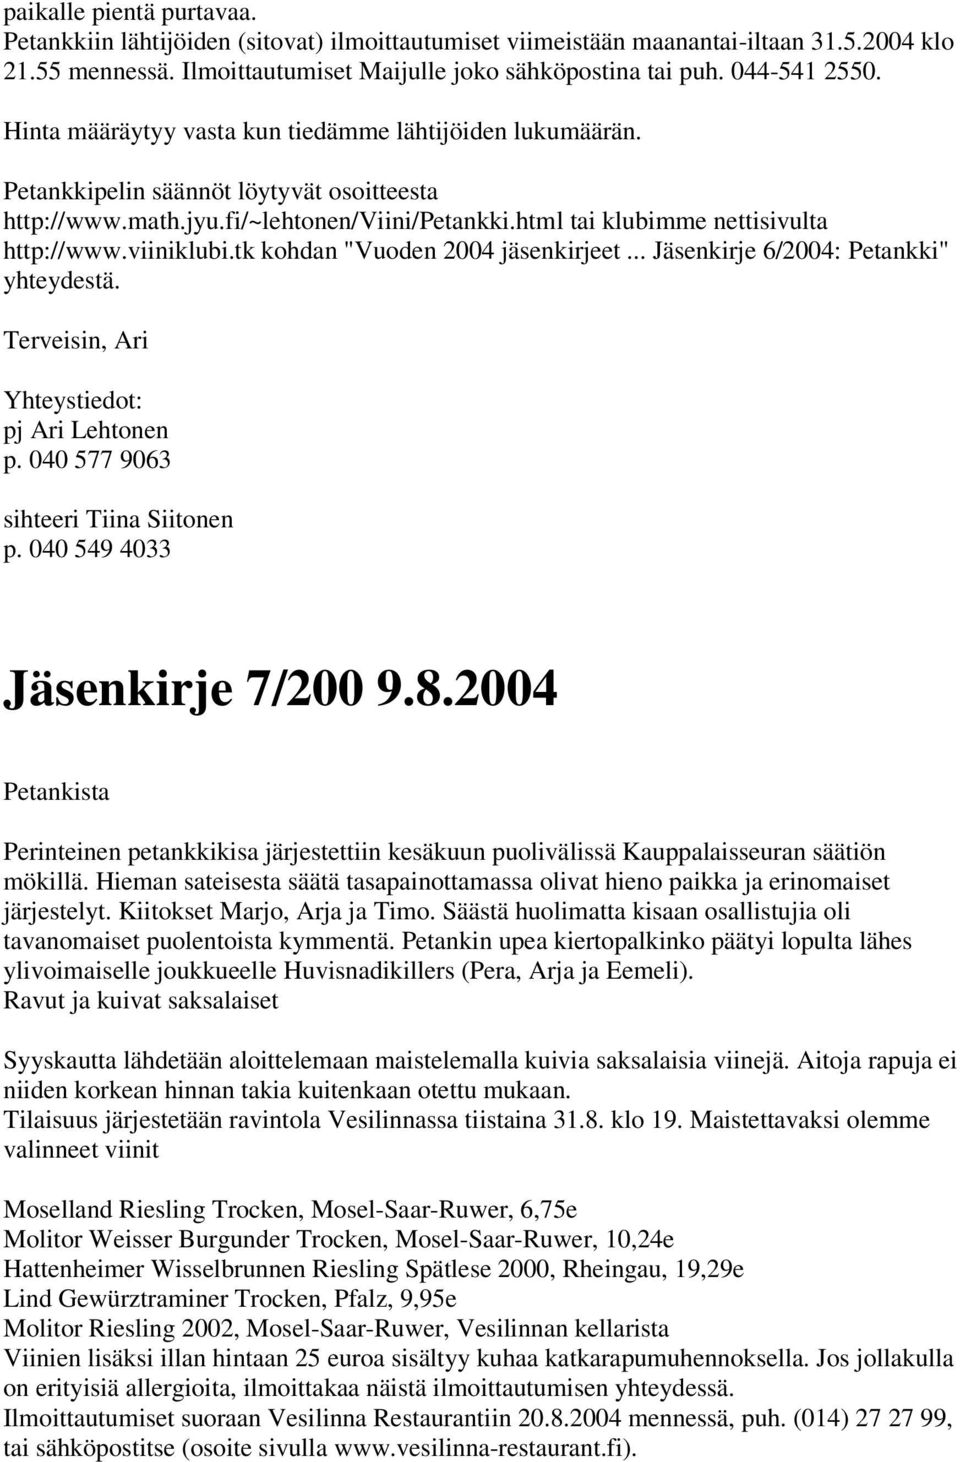 html tai klubimme nettisivulta http://www.viiniklubi.tk kohdan "Vuoden 2004 jäsenkirjeet... Jäsenkirje 6/2004: Petankki" yhteydestä. p. 040 577 9063 sihteeri Tiina Siitonen Jäsenkirje 7/200 9.8.